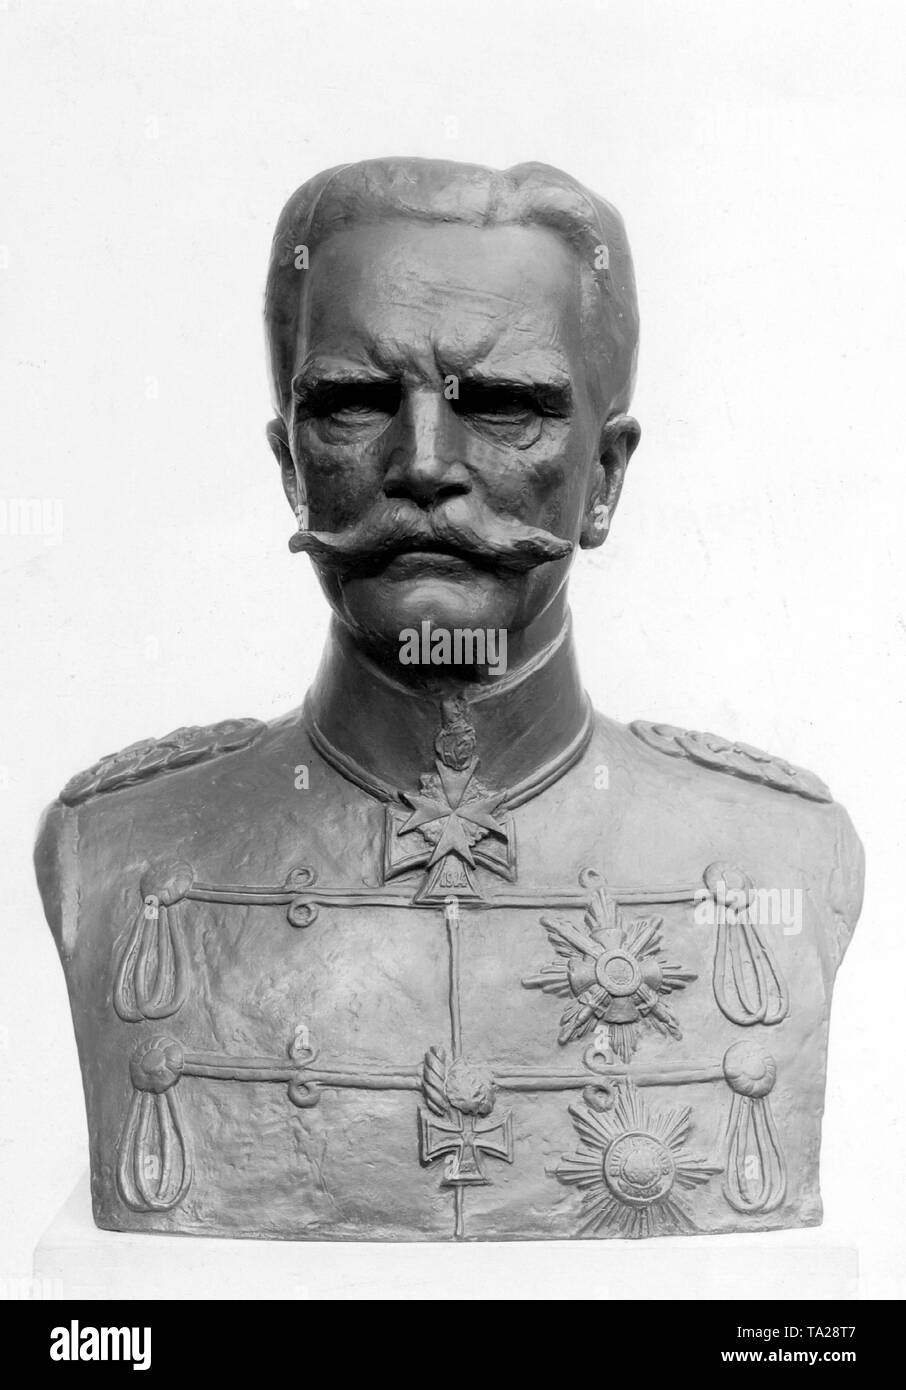 Bust of the Prussian Field Marshal August von Mackensen. Stock Photo